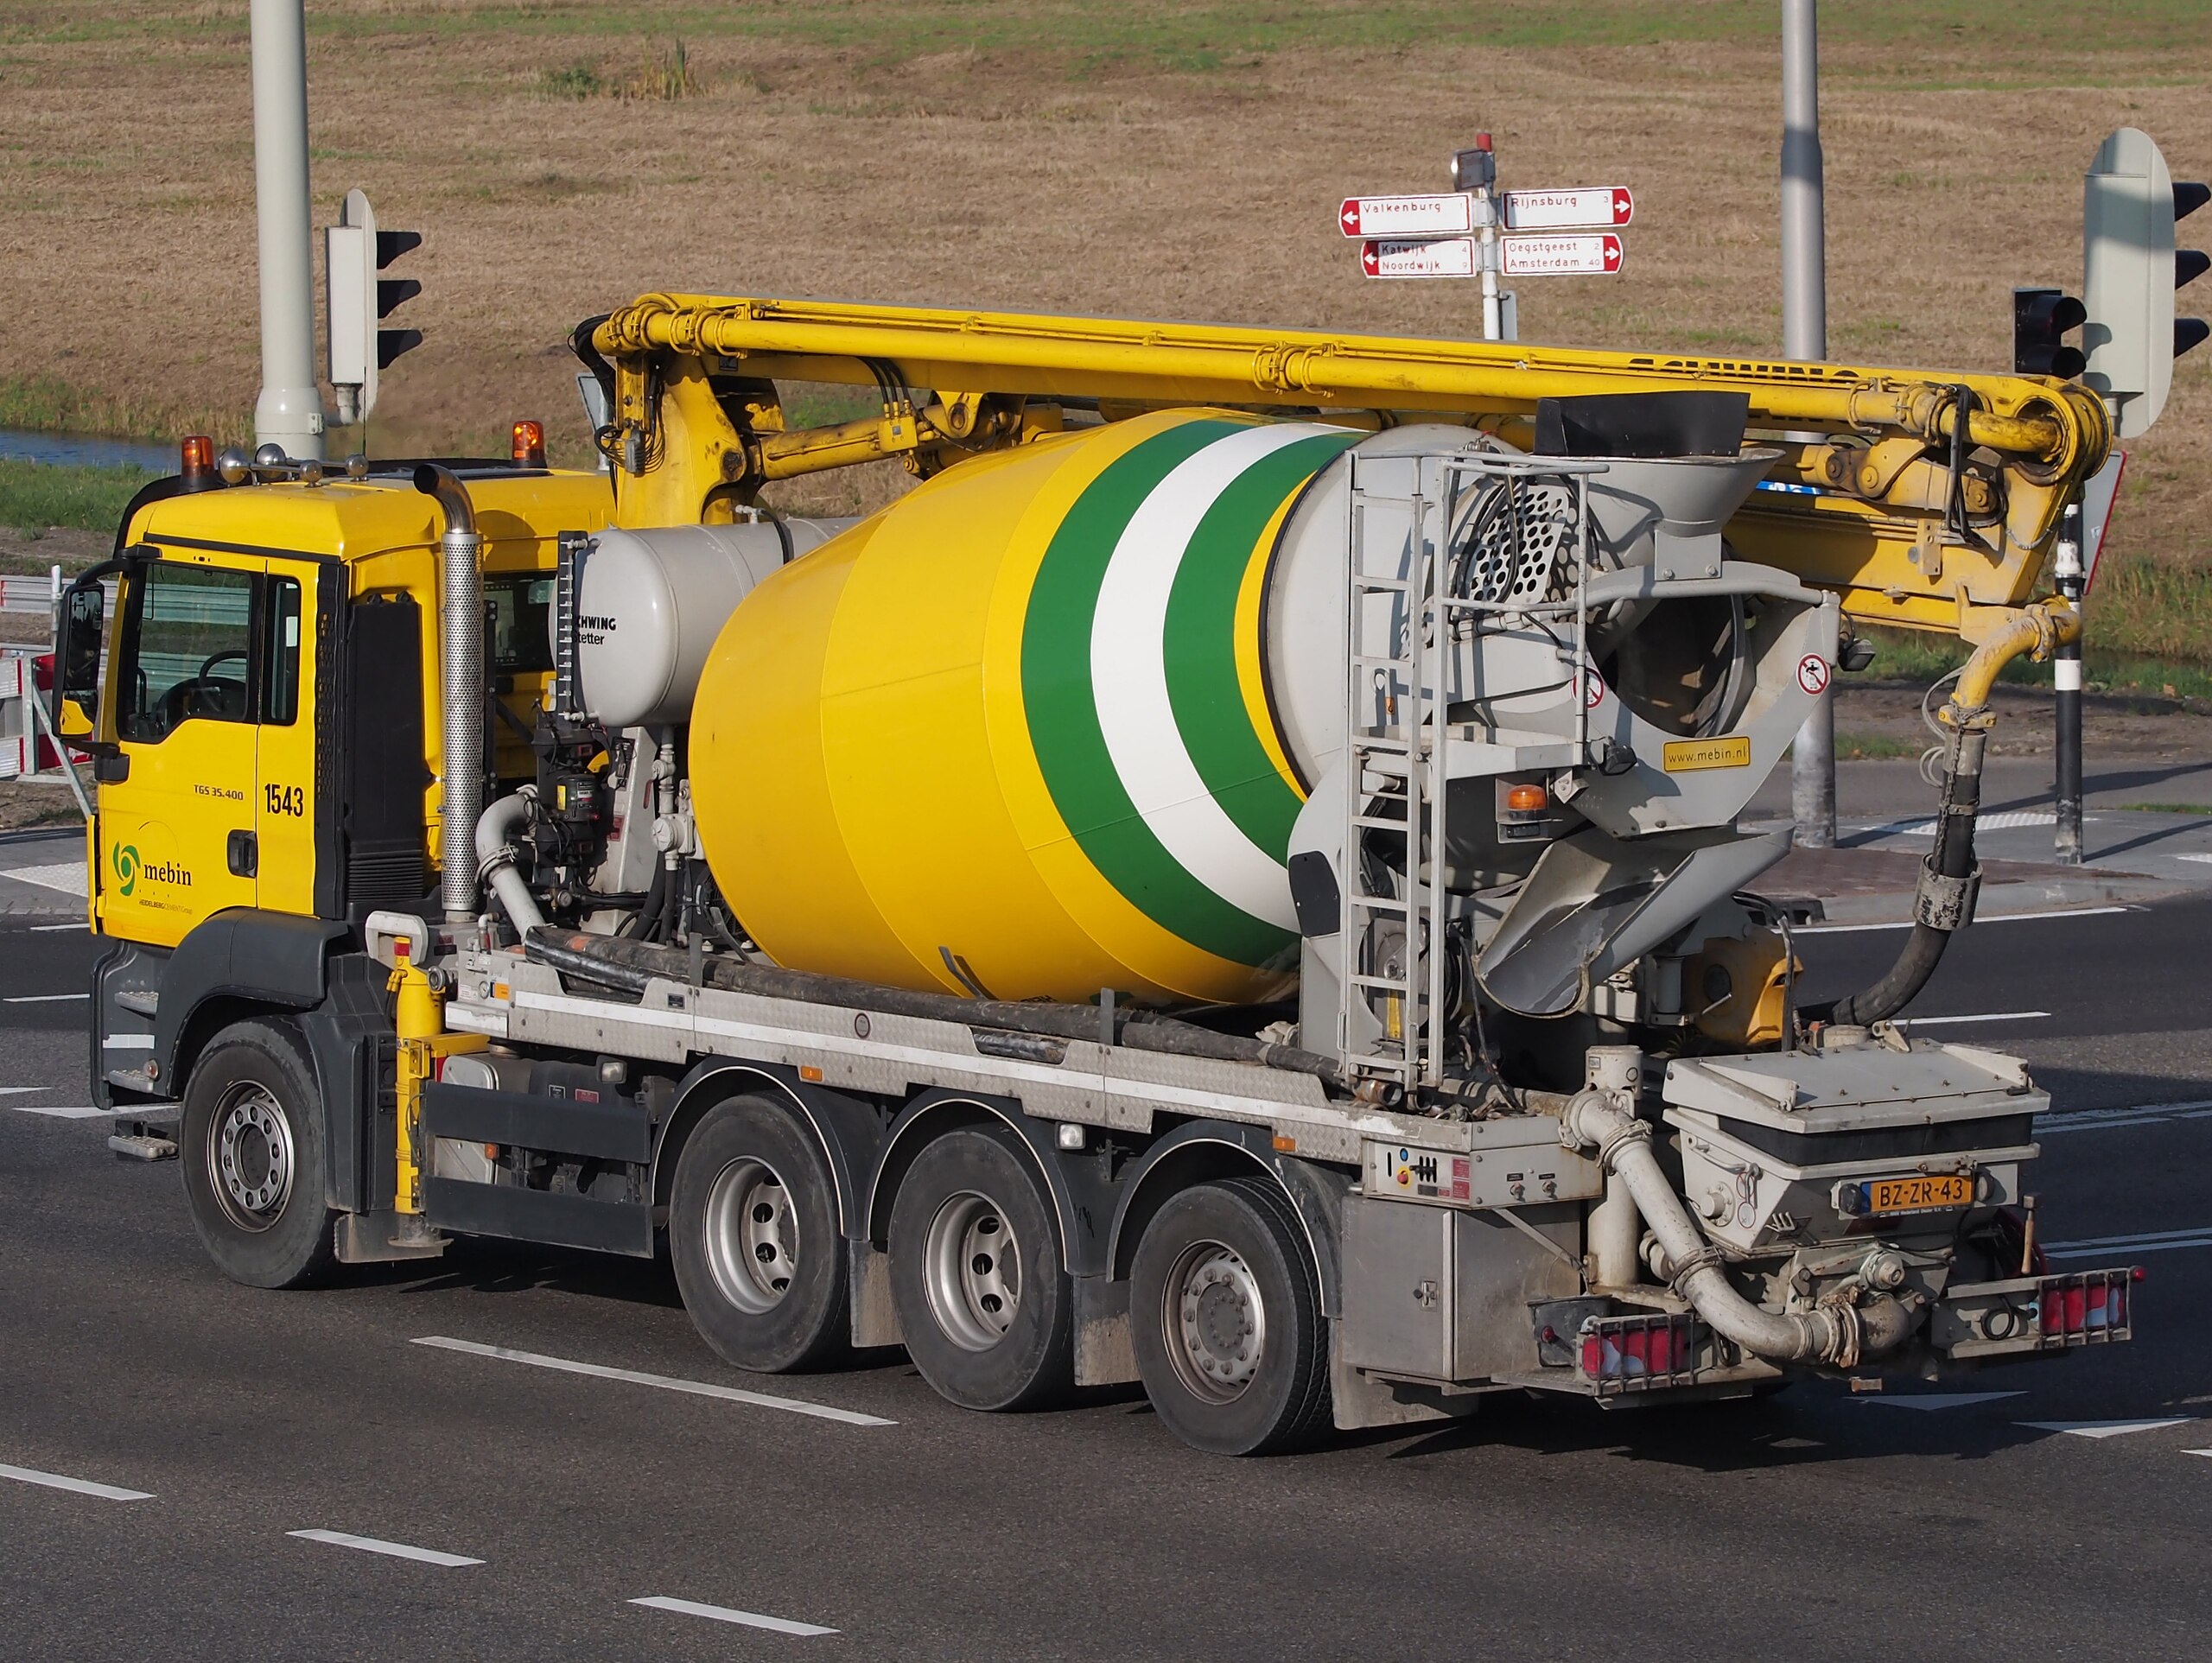 File:MAN TGS 35.400 Cement truck, Mebin.jpg - Wikimedia Commons